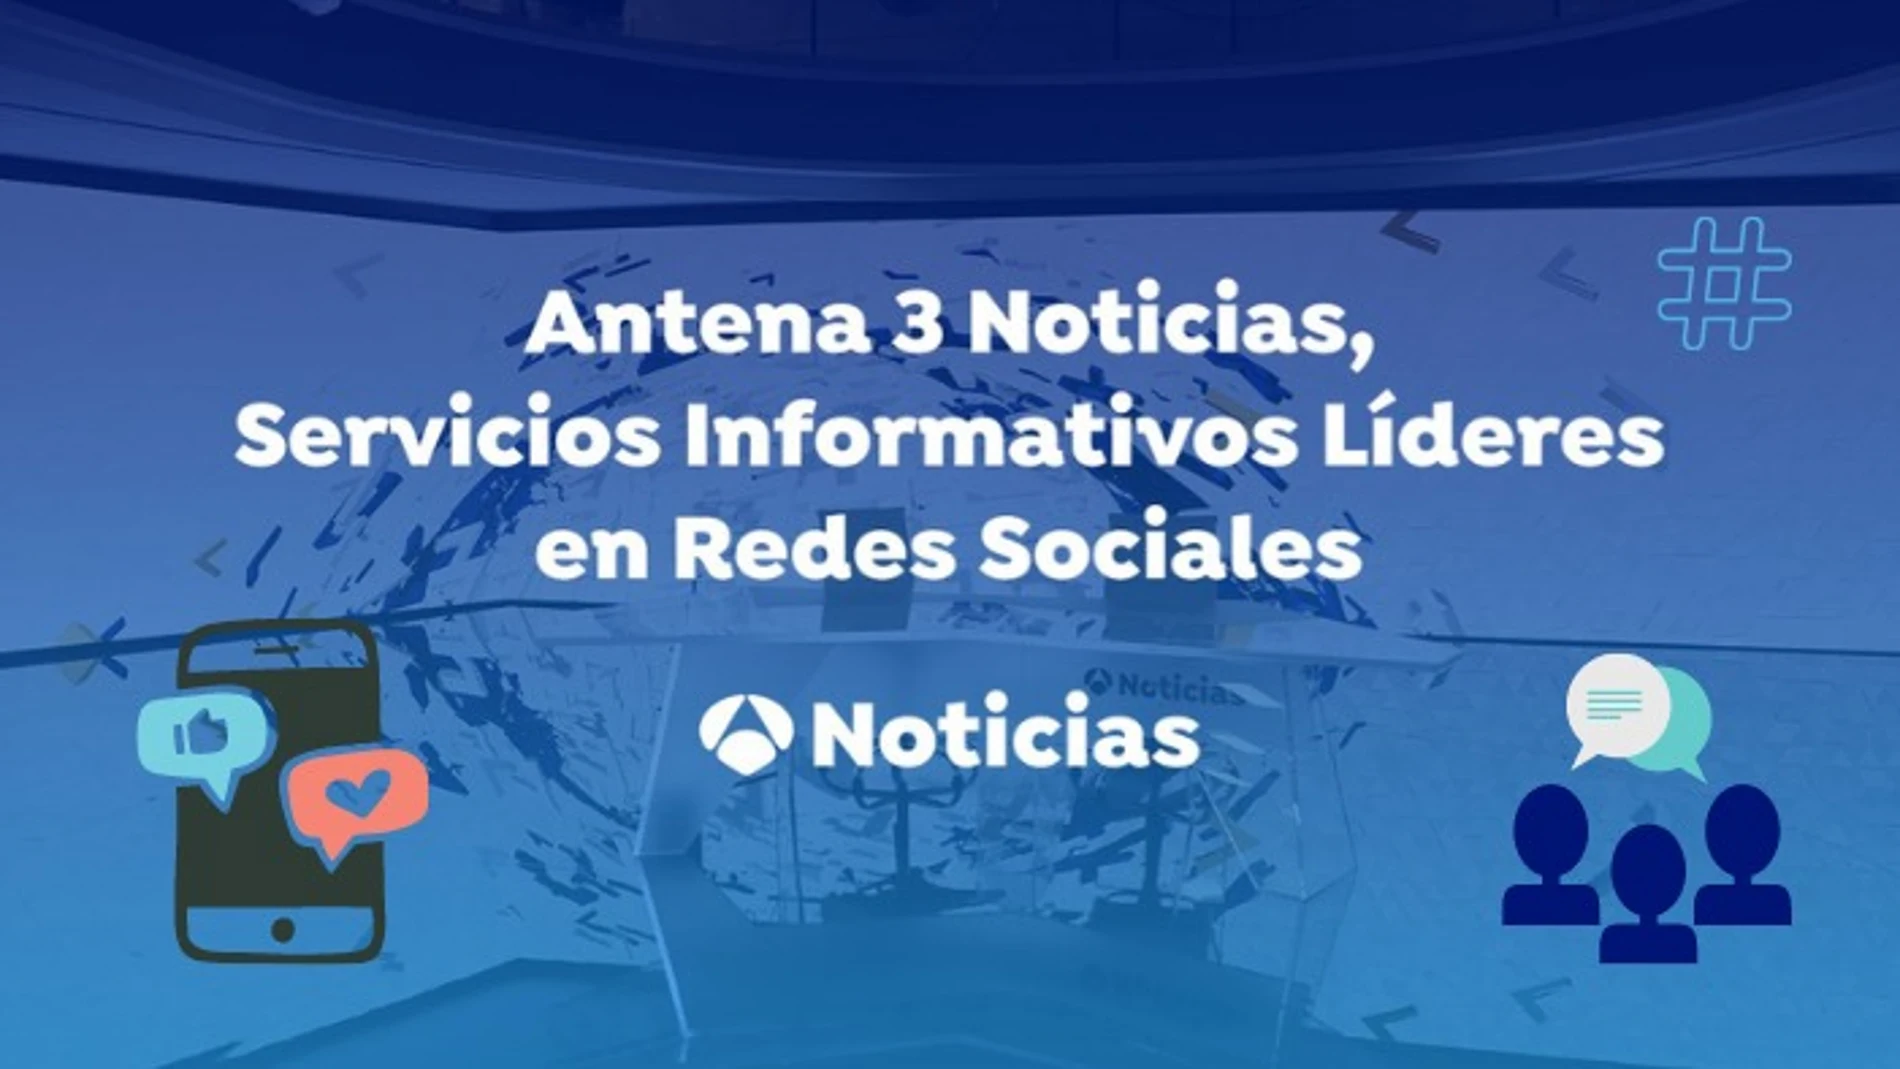 Día Mundial de las Redes Sociales: Antena 3 Noticias sigue aumentando su presencia digital 